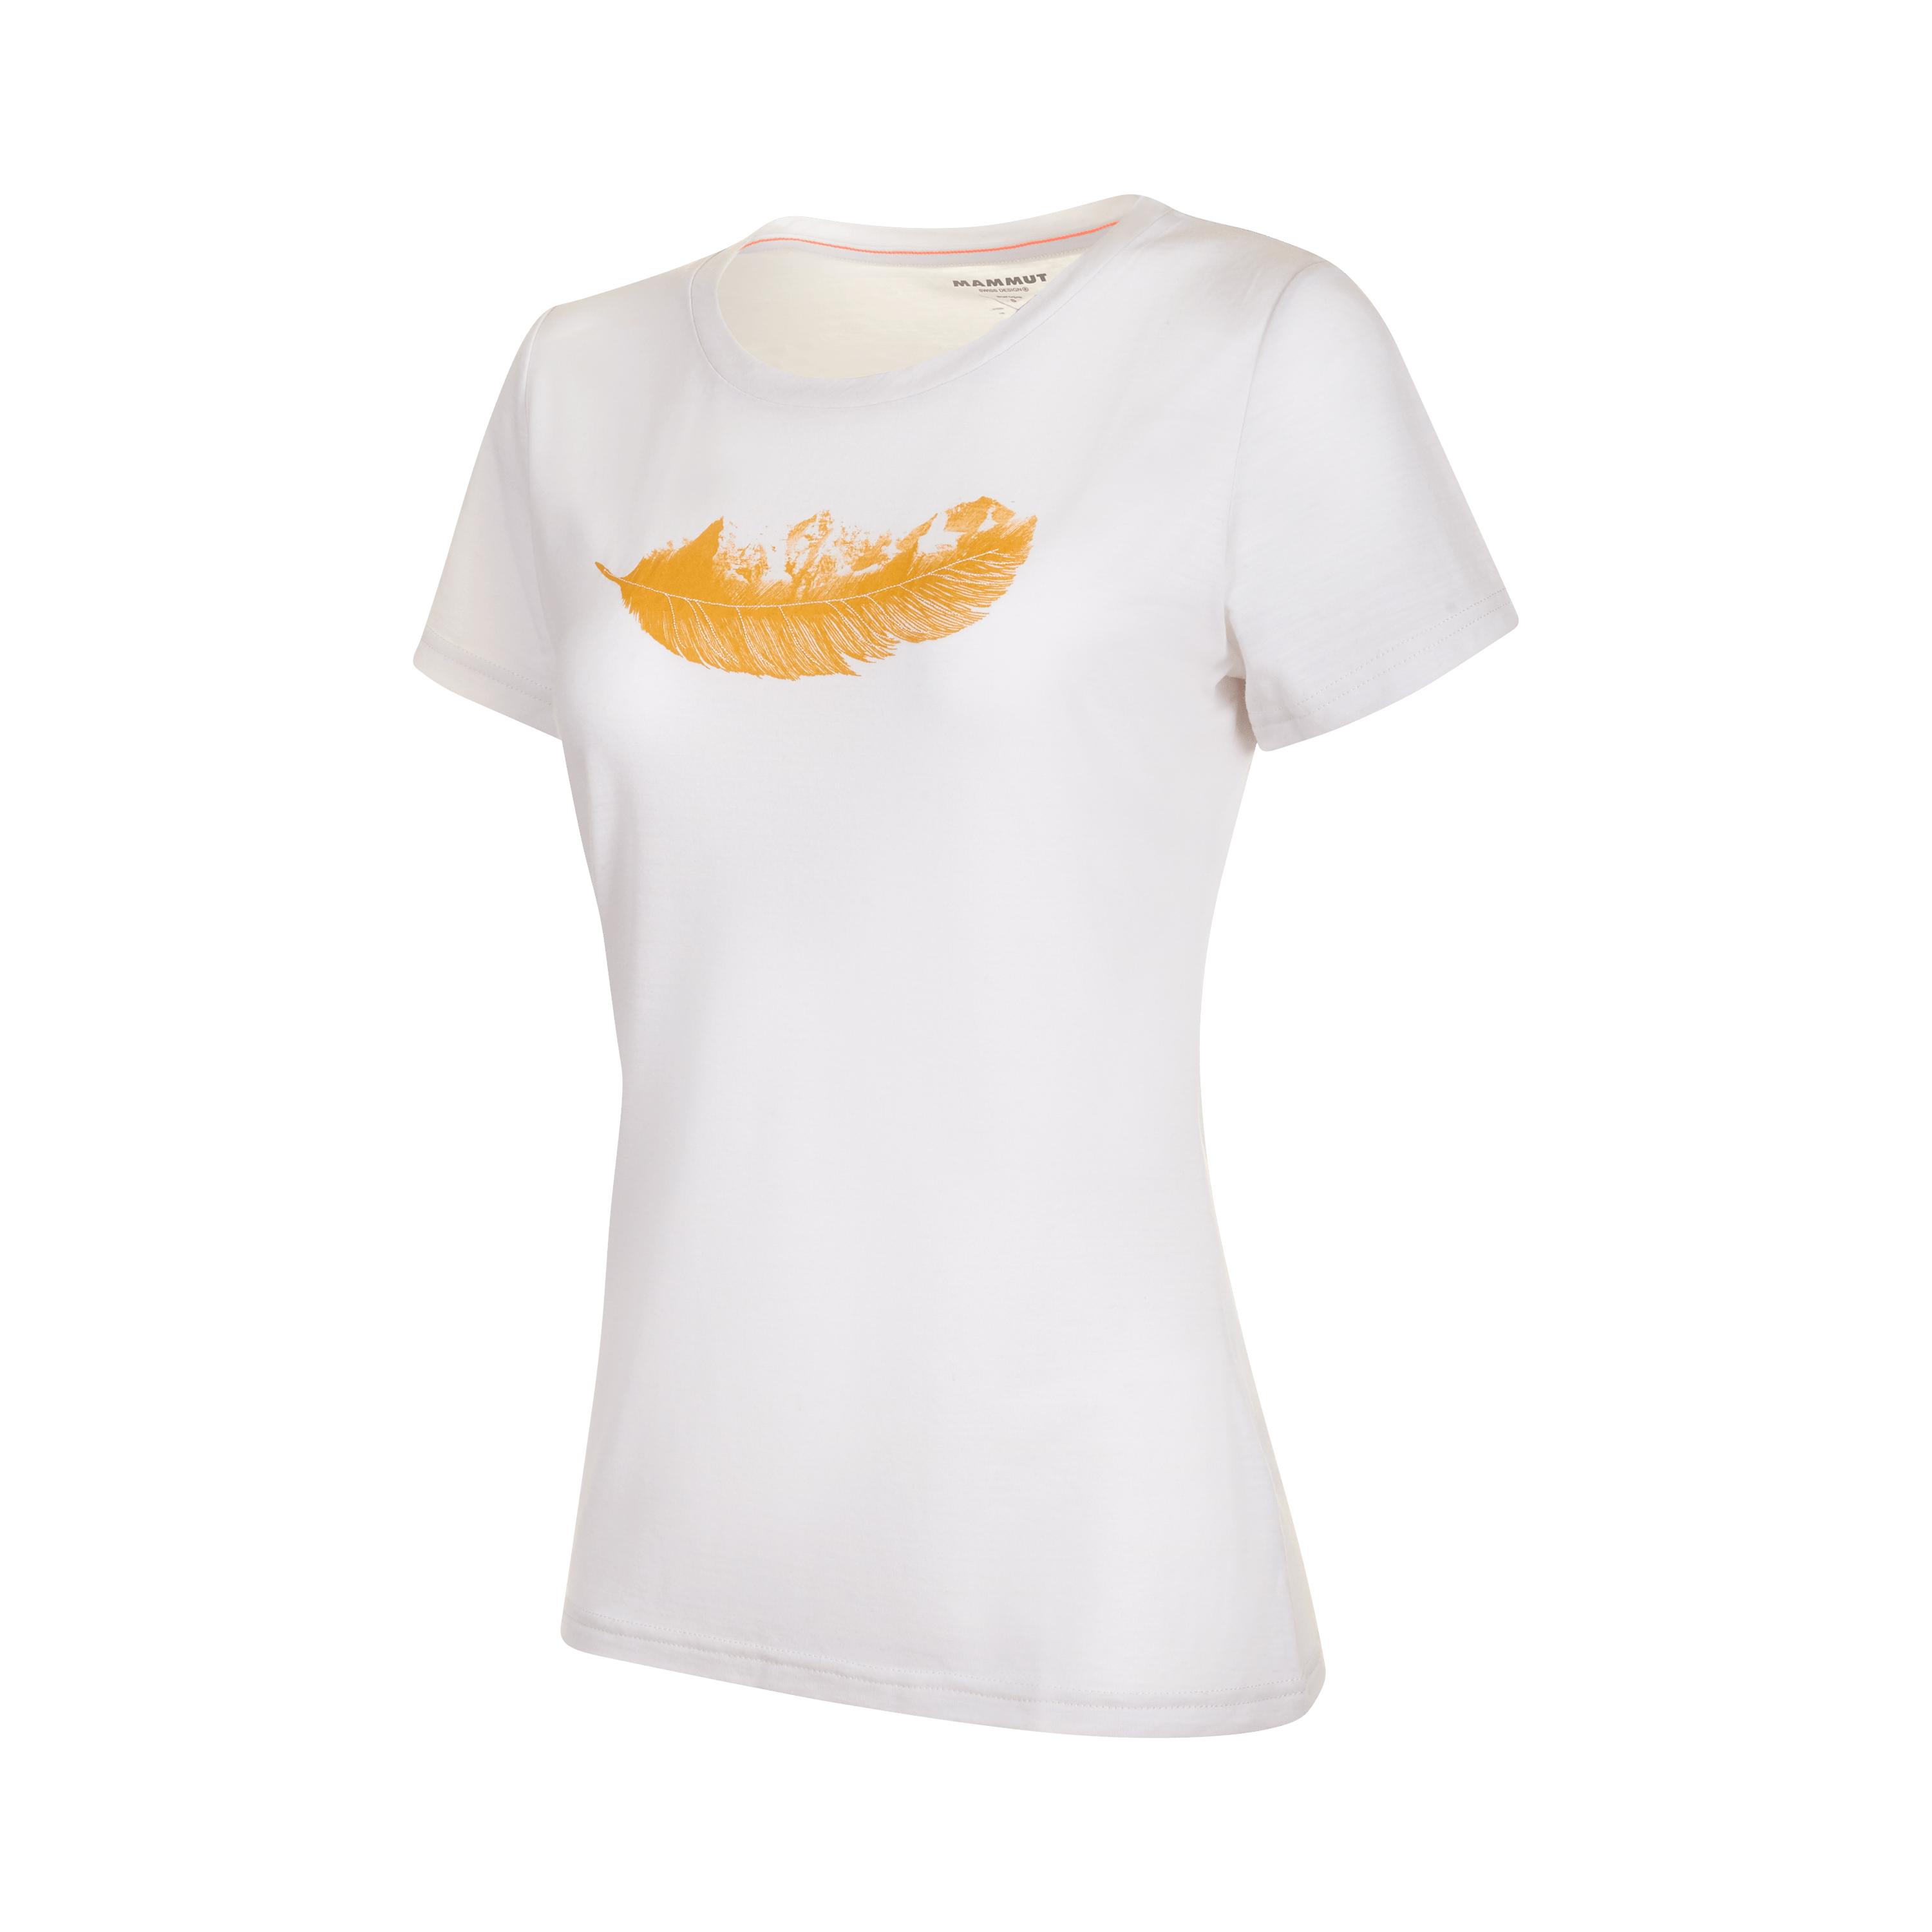 Alnasca T-Shirt Women